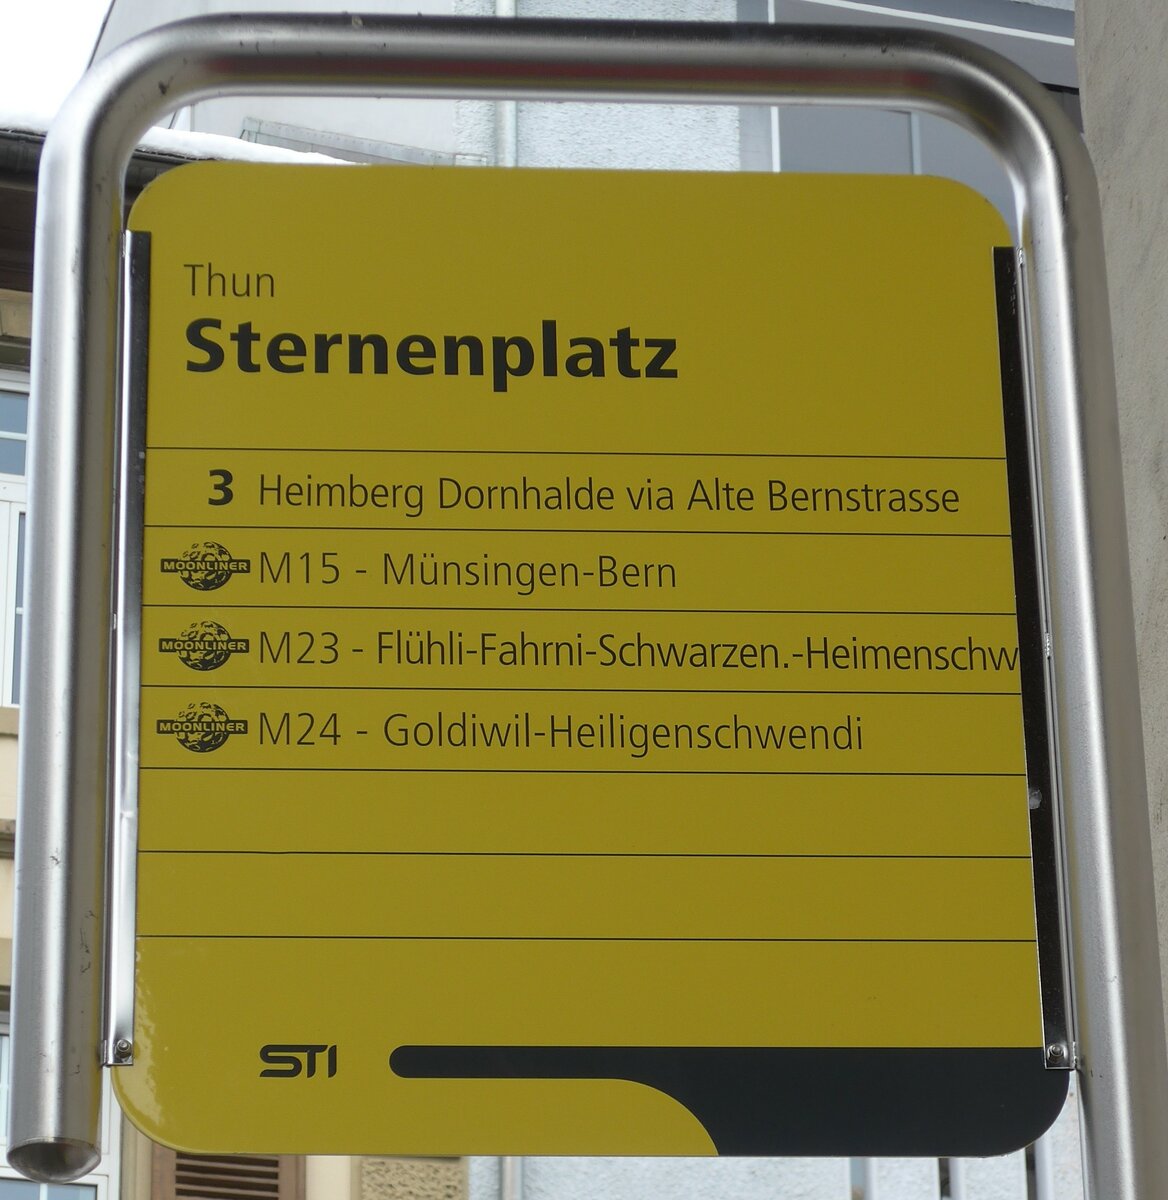 (158'572) - STI-Haltestellenschild - Thun, Sternenplatz - am 2. Februar 2015